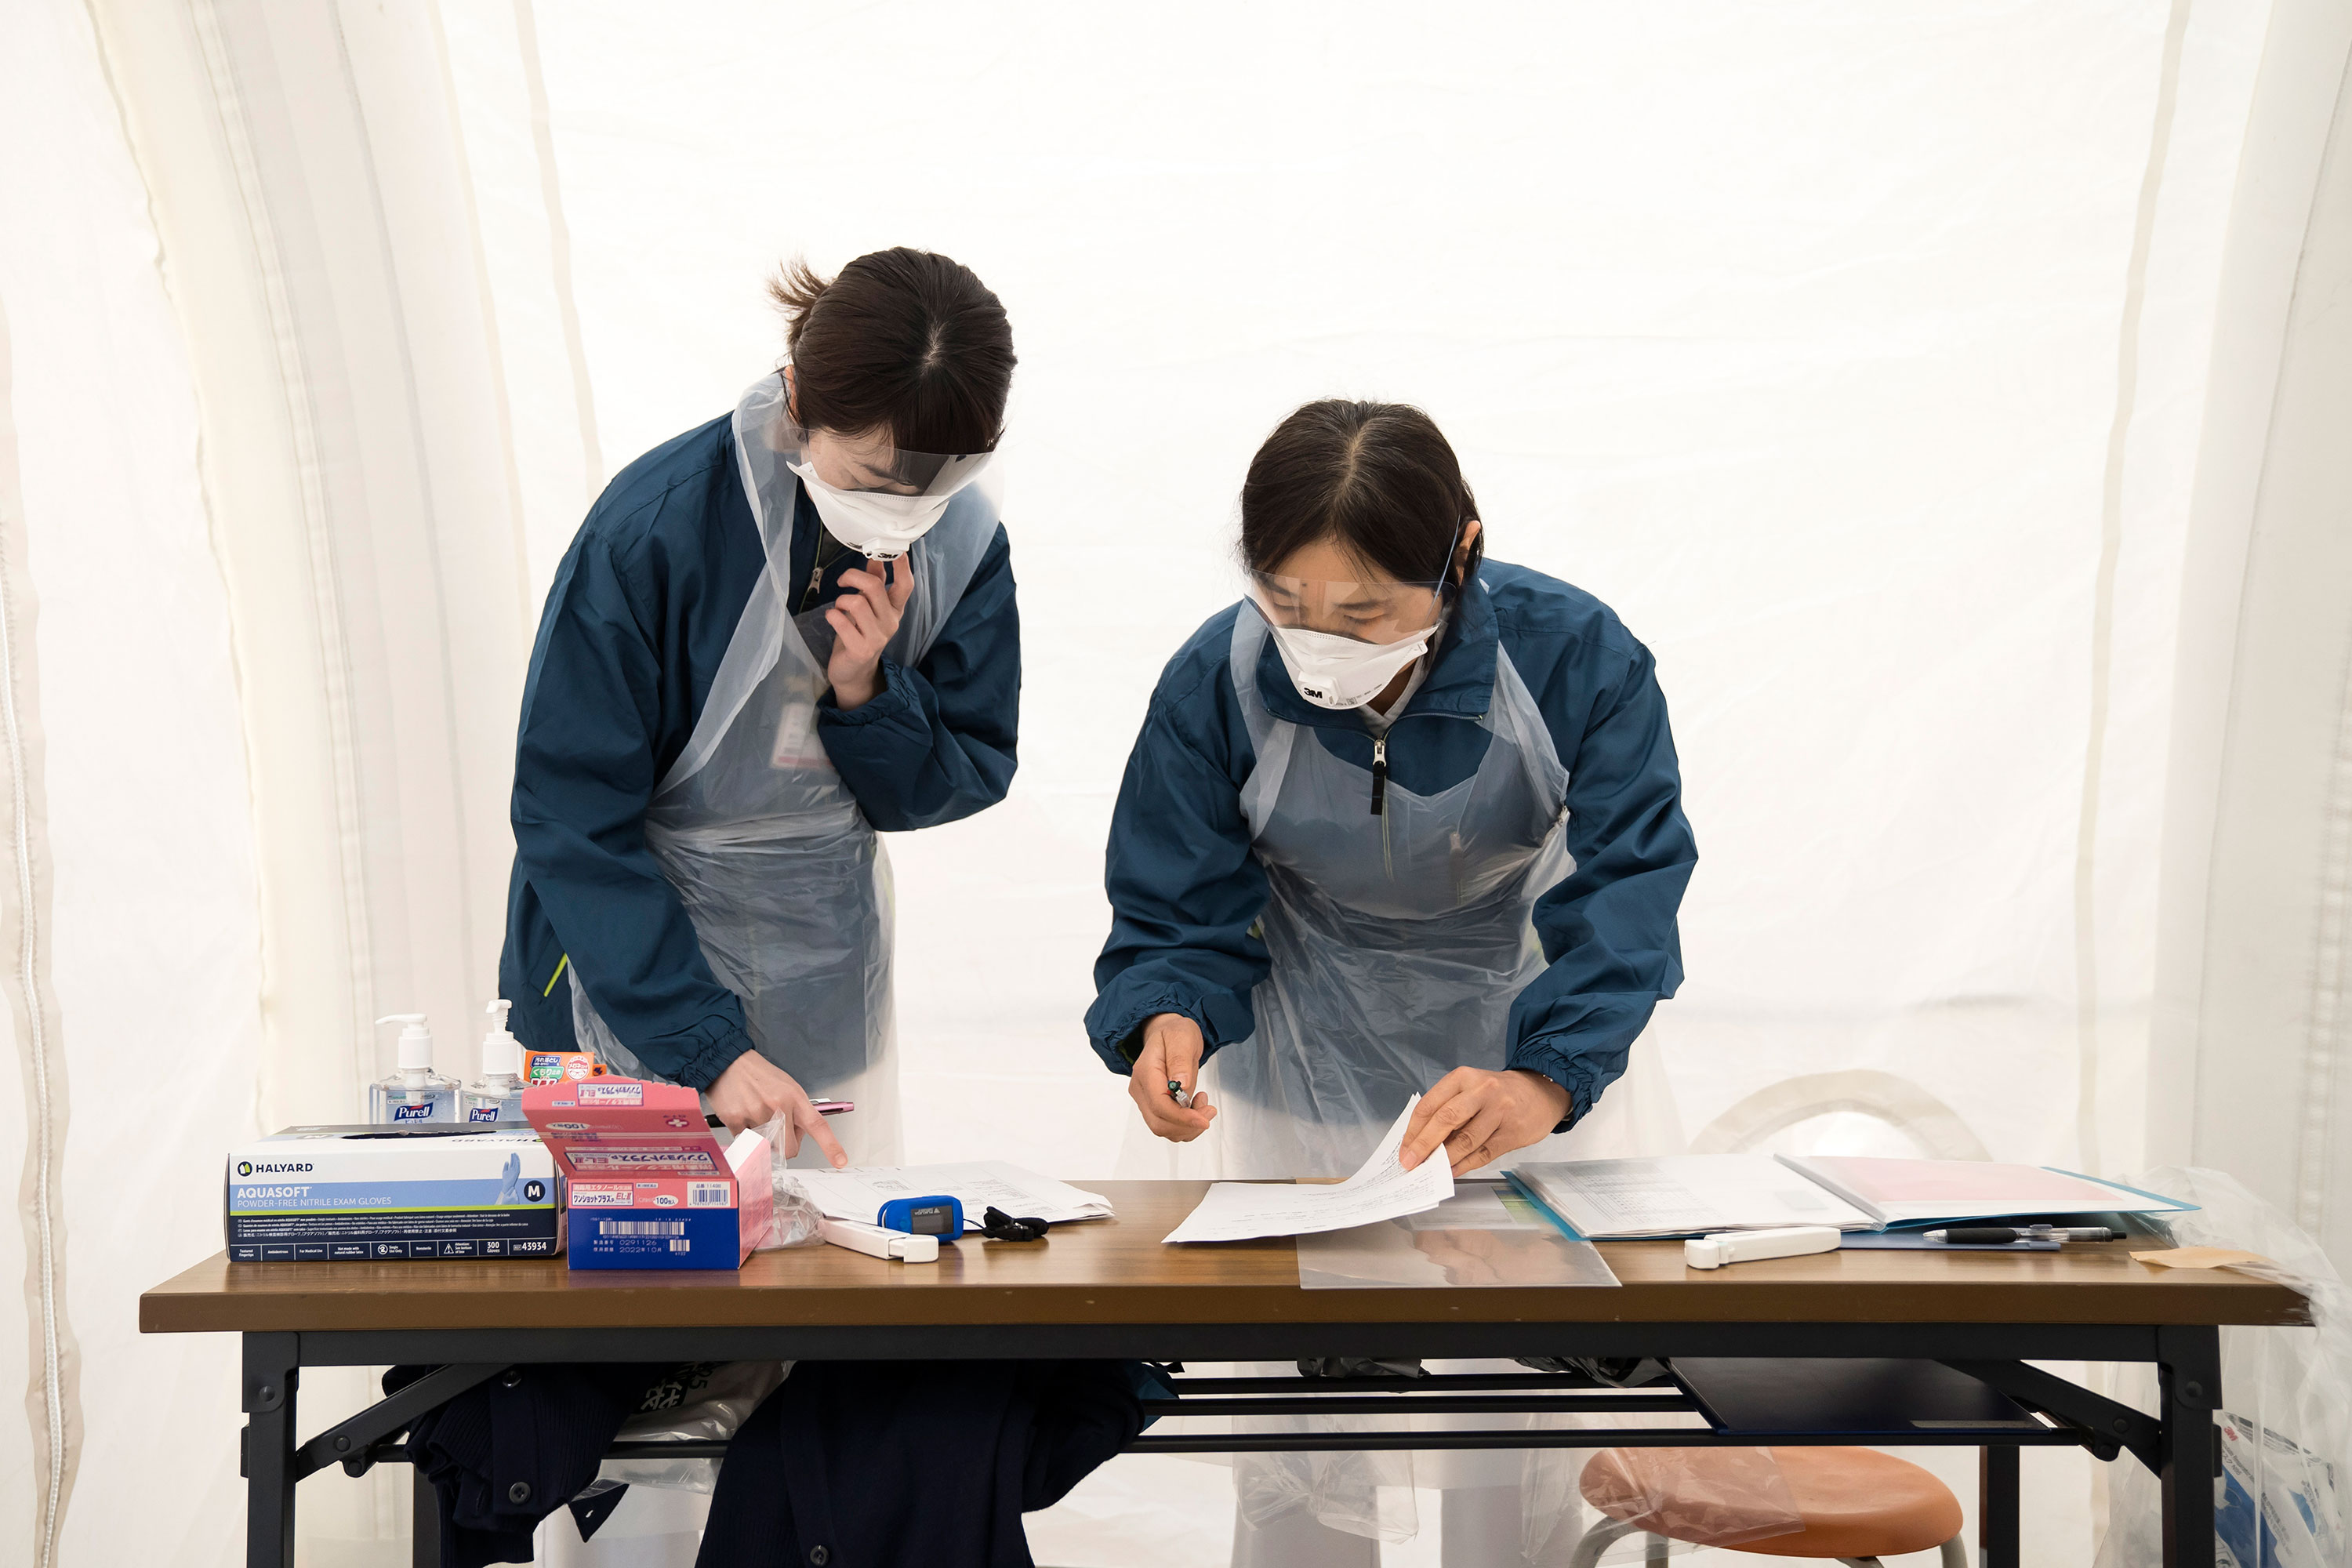 Medical staff prepare to screen potential coronavirus patients at Kawakita General Hospital on April 17, in Tokyo, Japan.